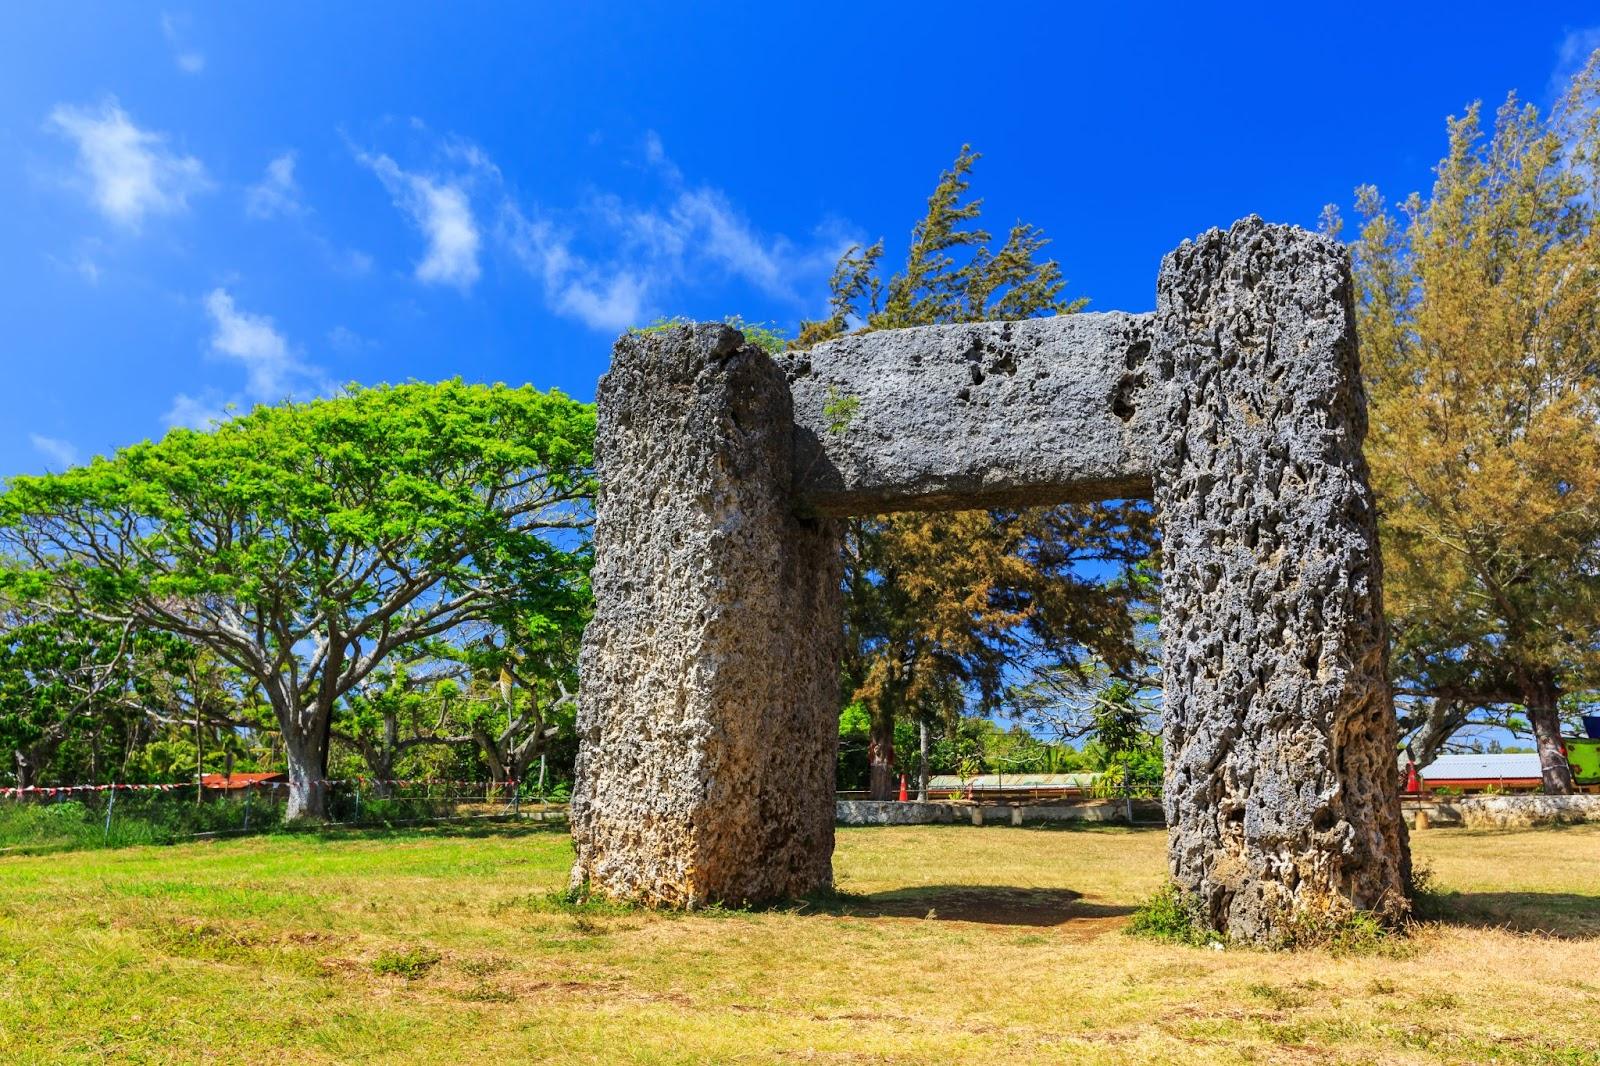 Ha'amonga' a Maui in Nuku'alofa, Kingdom of Tonga